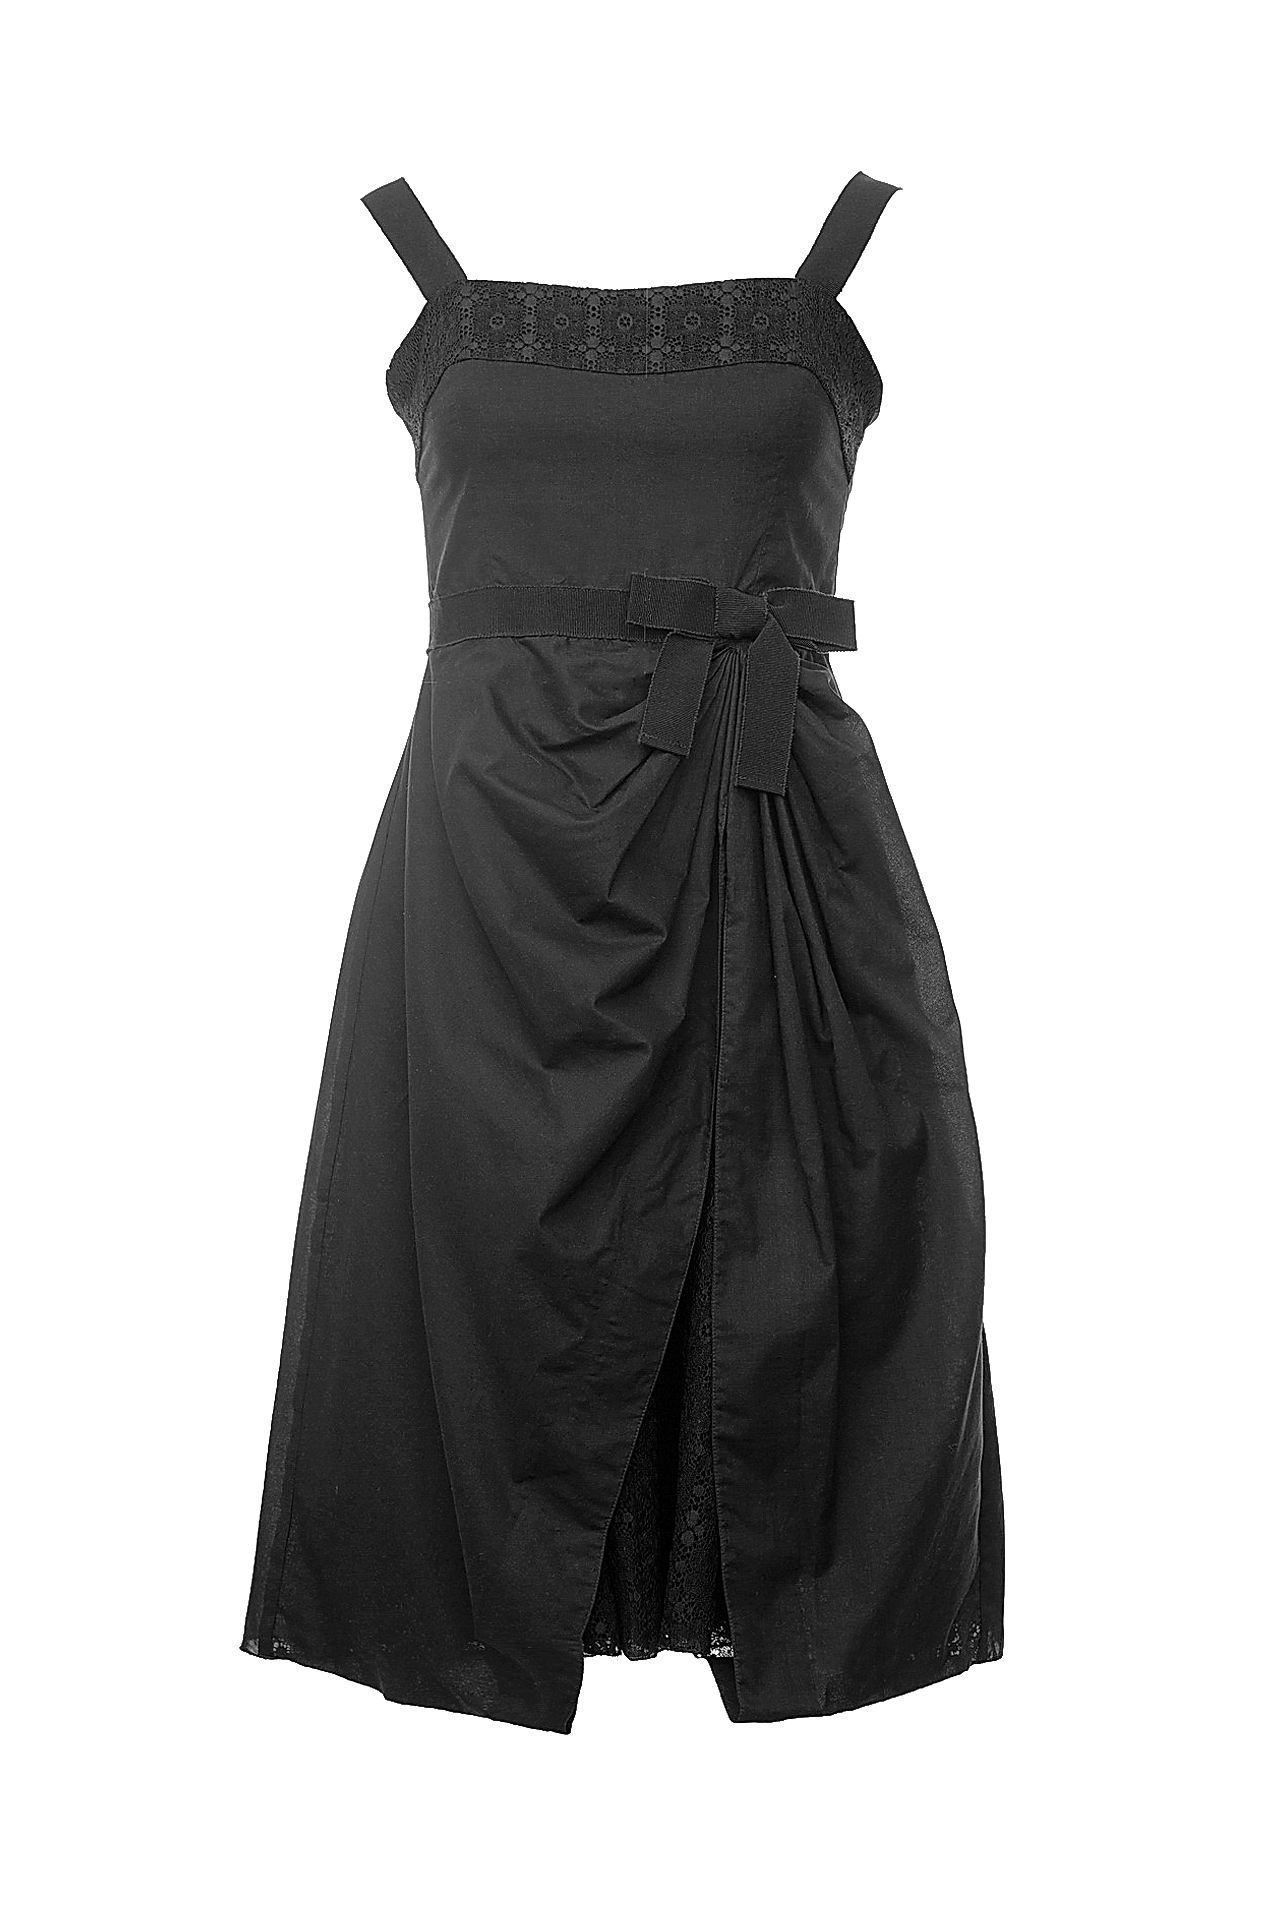 Одежда женская Сарафан EMPORIO ARMANI (EJPN2071/17). Купить за 12960 руб.